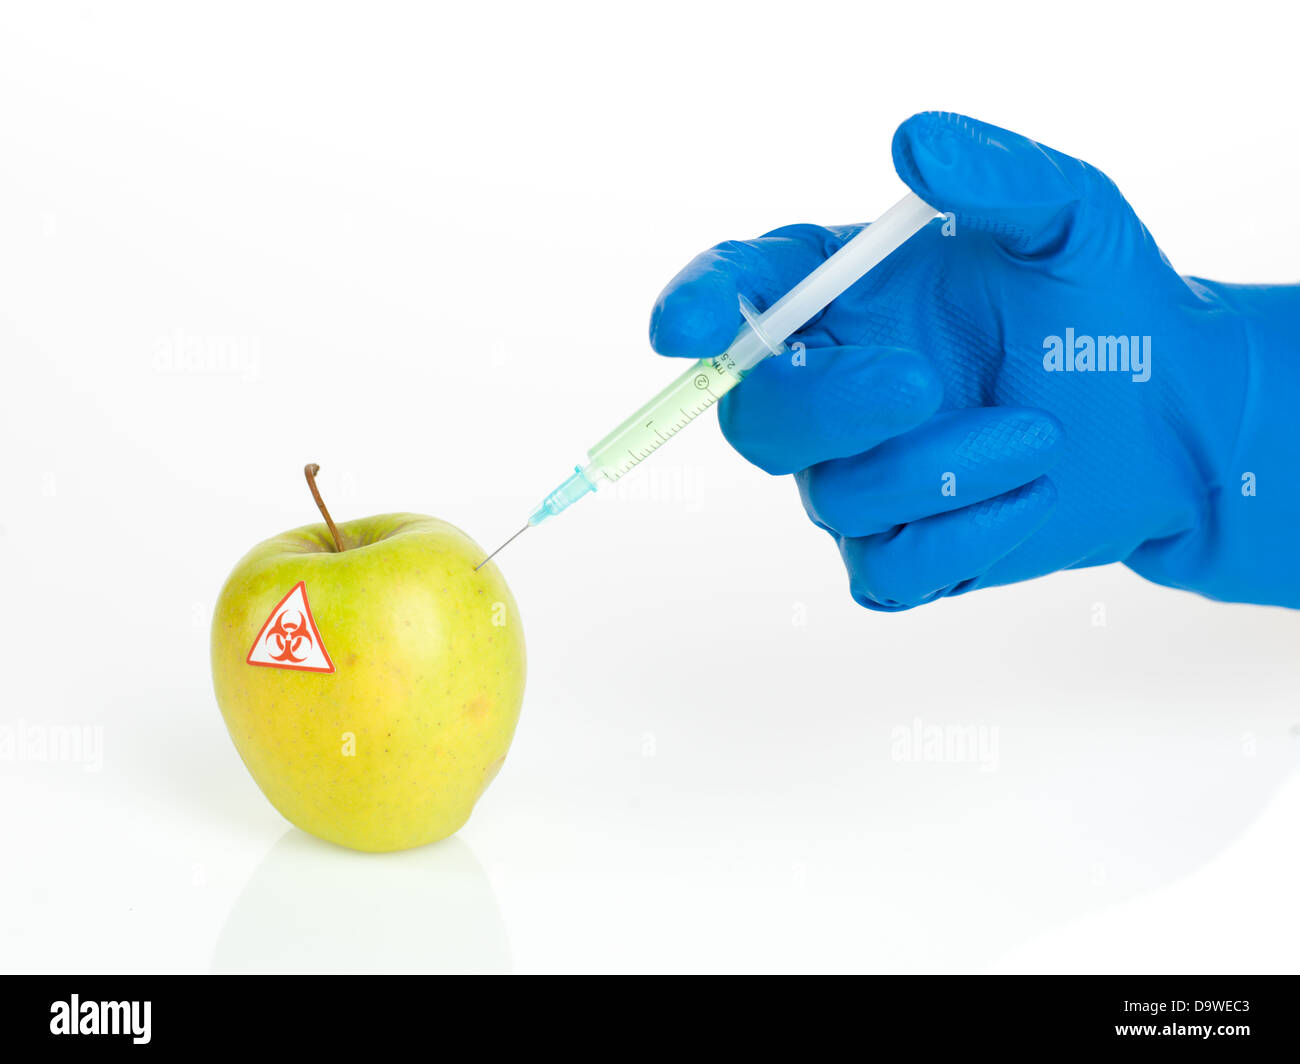 Fond blanc avec une pomme jaune appelée bio être dangereux une injection d'une substance transparente vert clair par une main dans un gant en caoutchouc bleu Banque D'Images